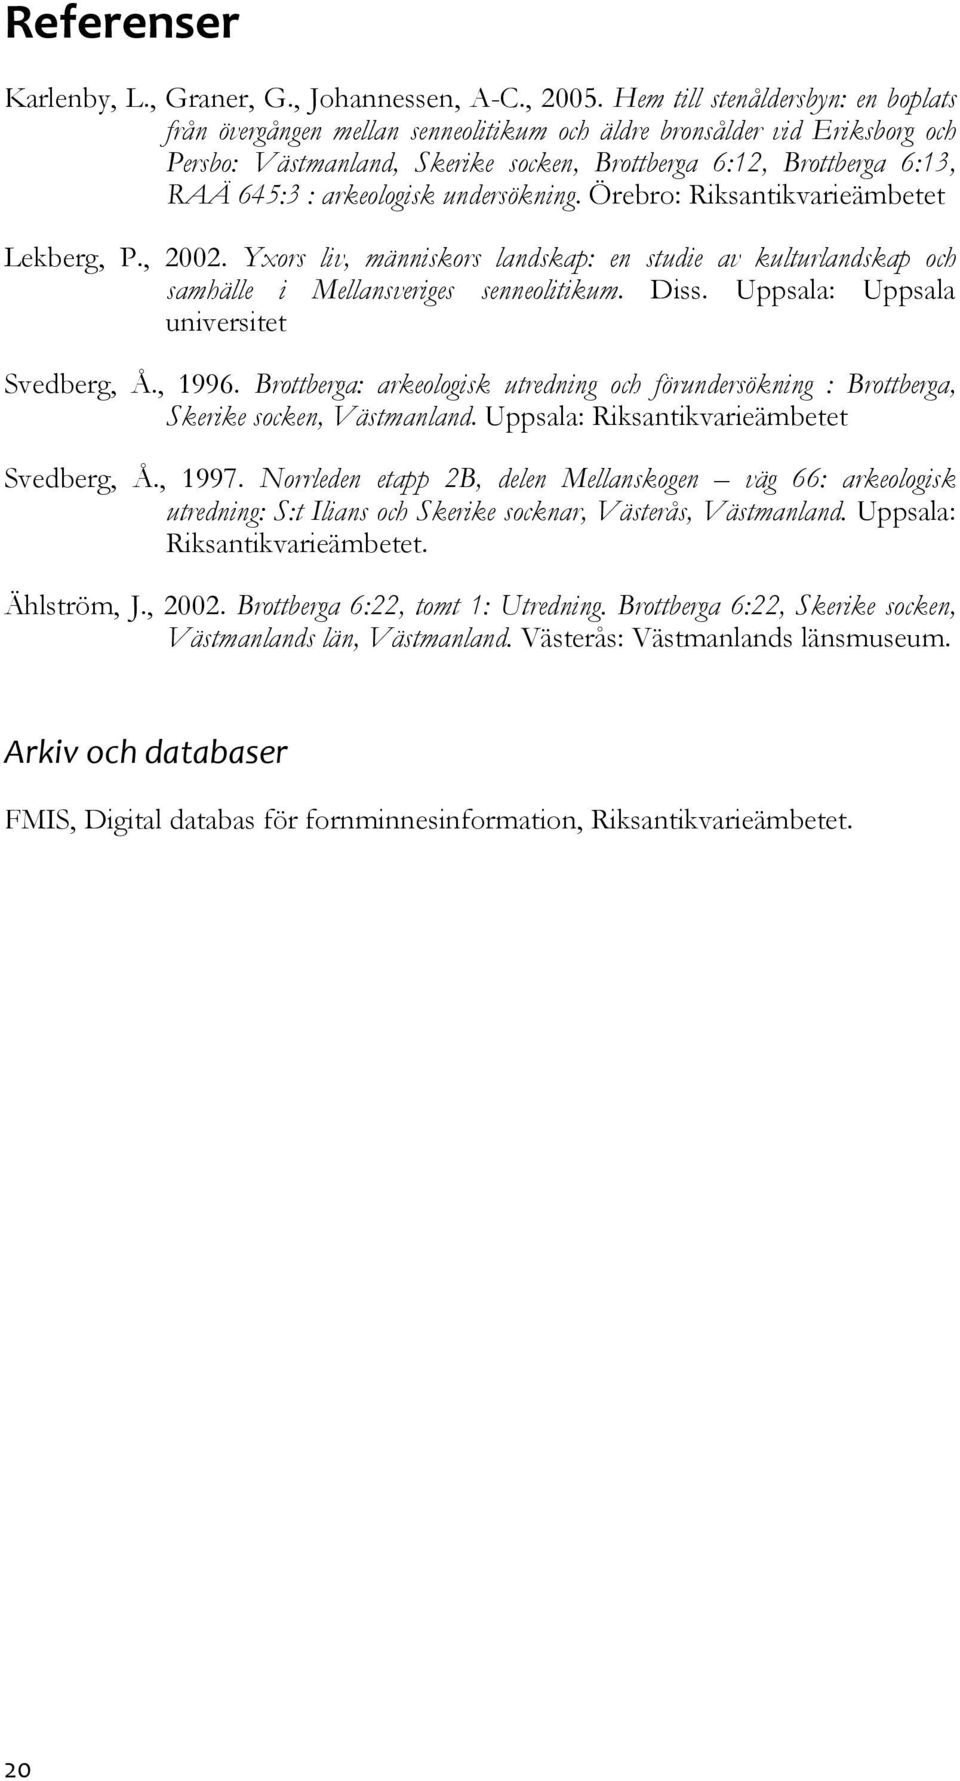 arkeologisk undersökning. Örebro: Riksantikvarieämbetet Lekberg, P., 2002. Yxors liv, människors landskap: en studie av kulturlandskap och samhälle i Mellansveriges senneolitikum. Diss.